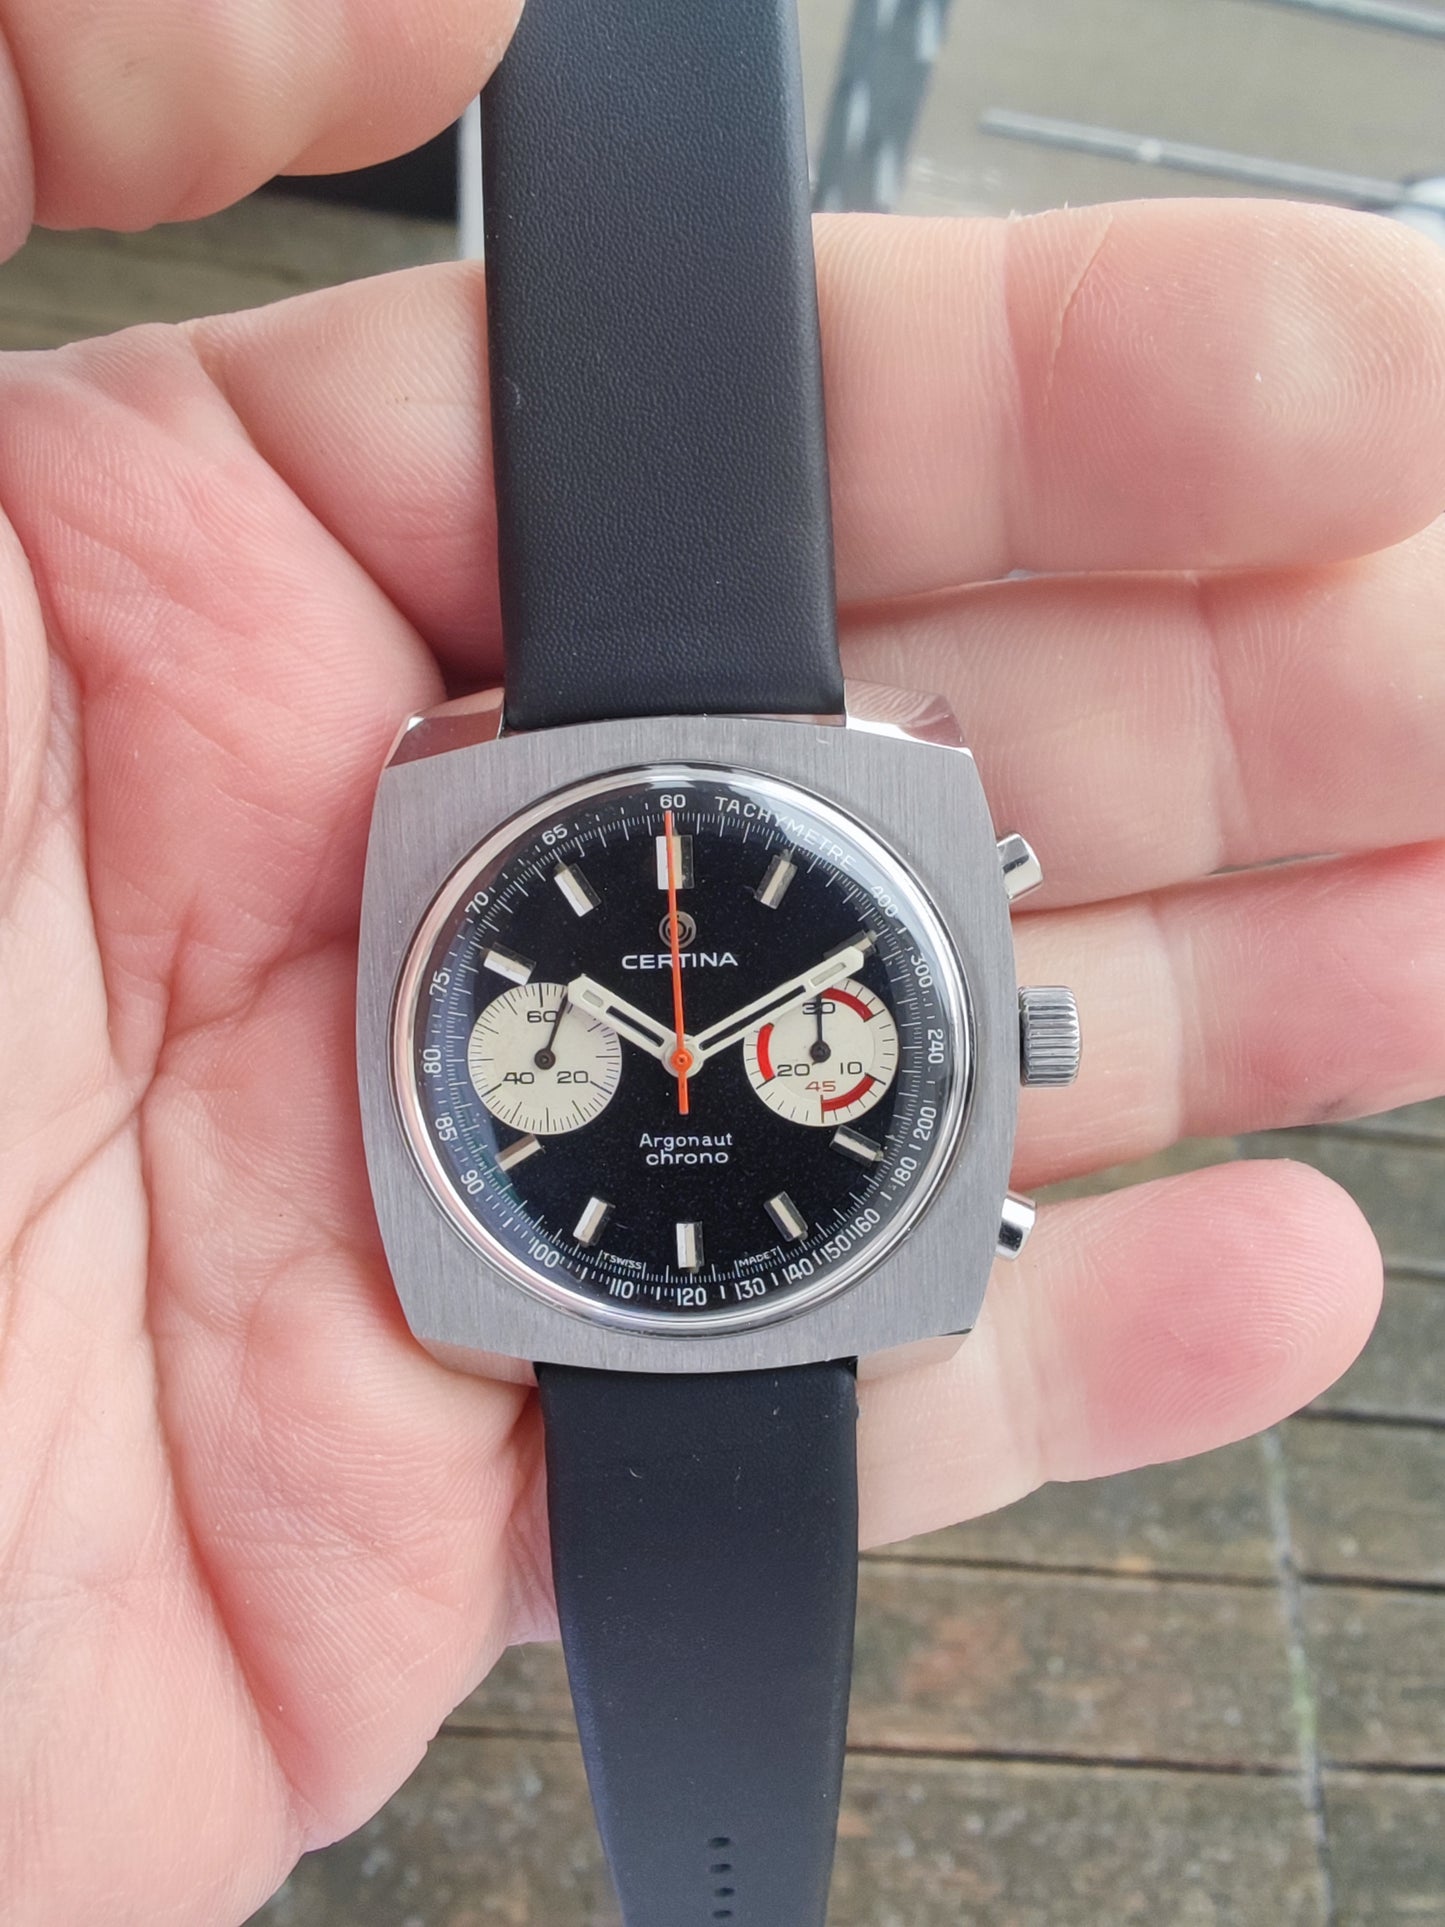 NOS CERTINA Argonaut black dial 8401-501 1968-1972